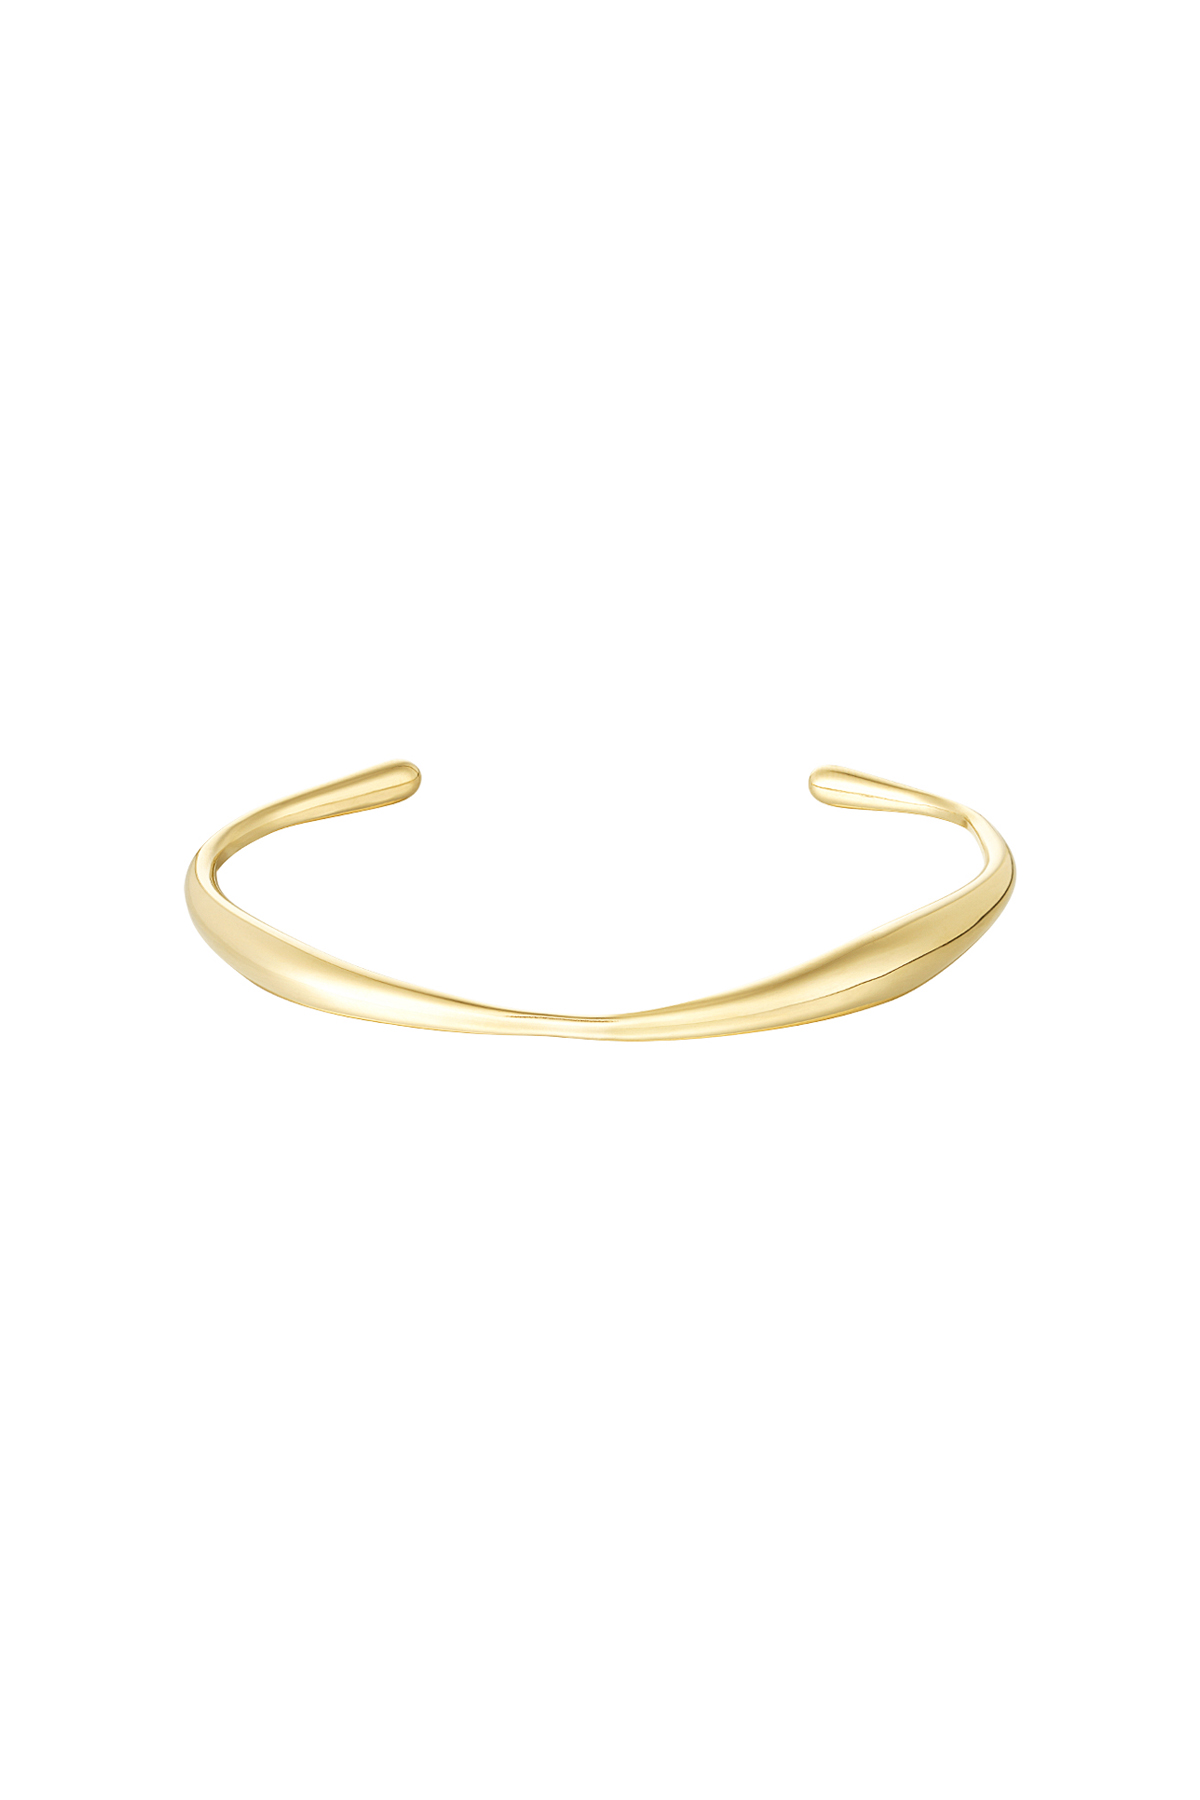 Armband in organischer Form – Gold h5 